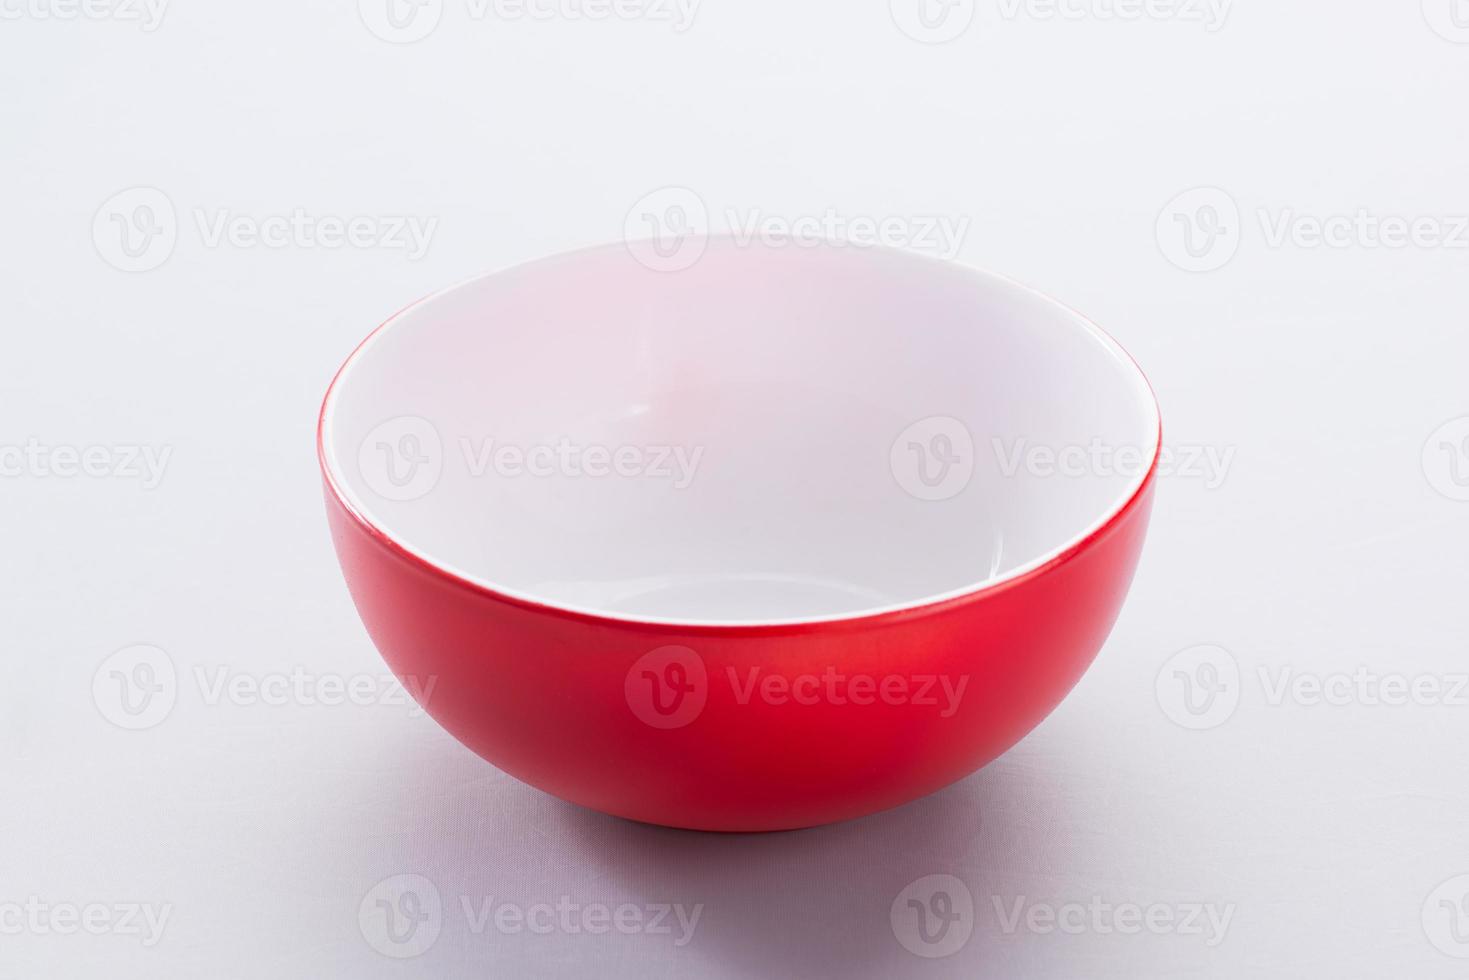 tom röd keramisk skål på en ljus bakgrund, isolerade foto